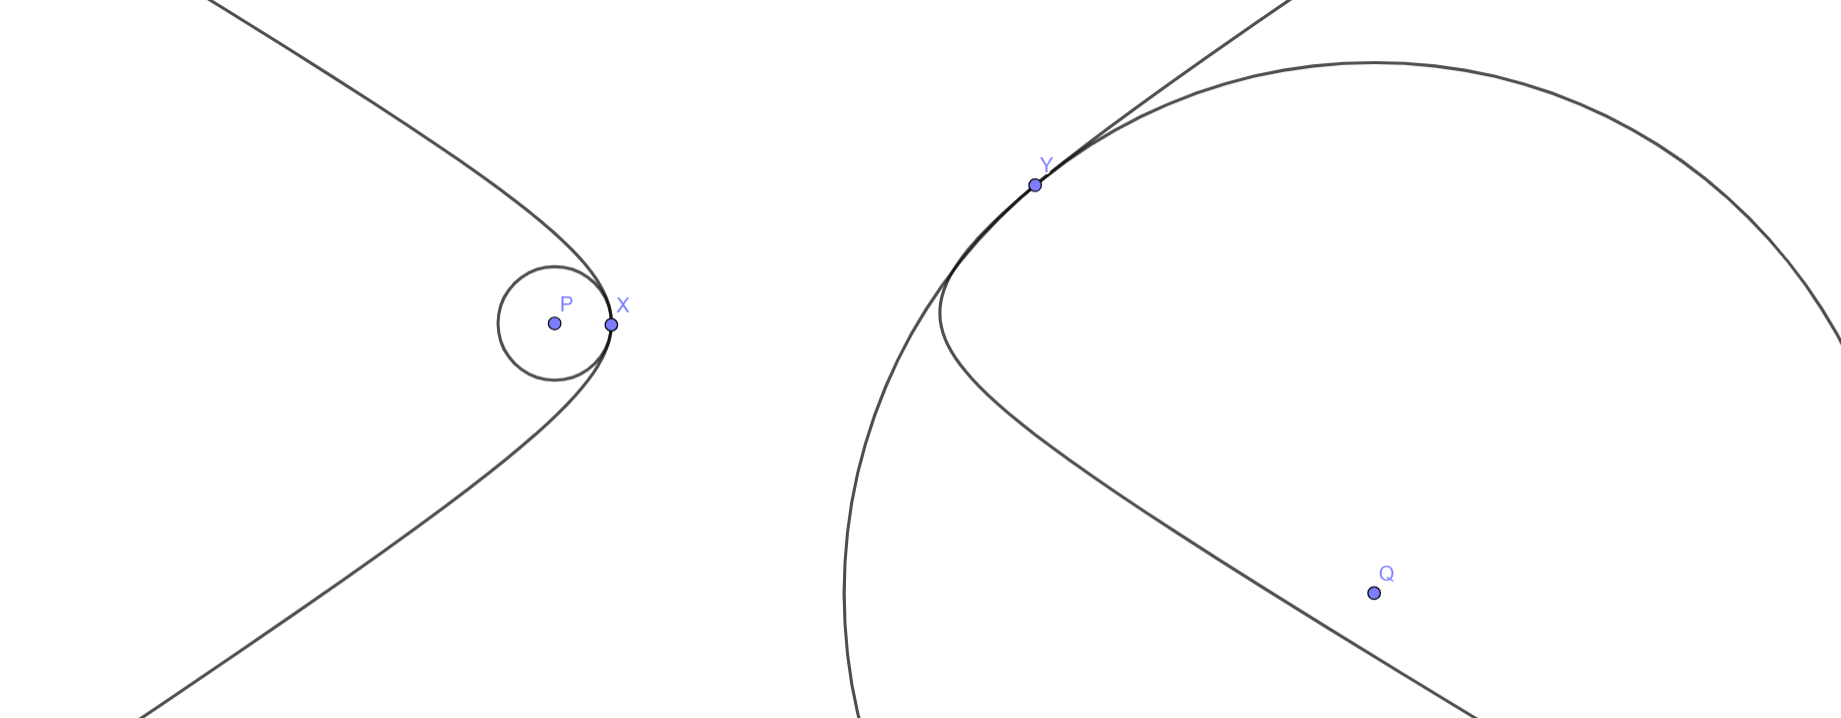 Окружности кривизны на примере гиперболы. Видно, что чем "кривее" наша кривая, тем меньше радиус её кривизны.